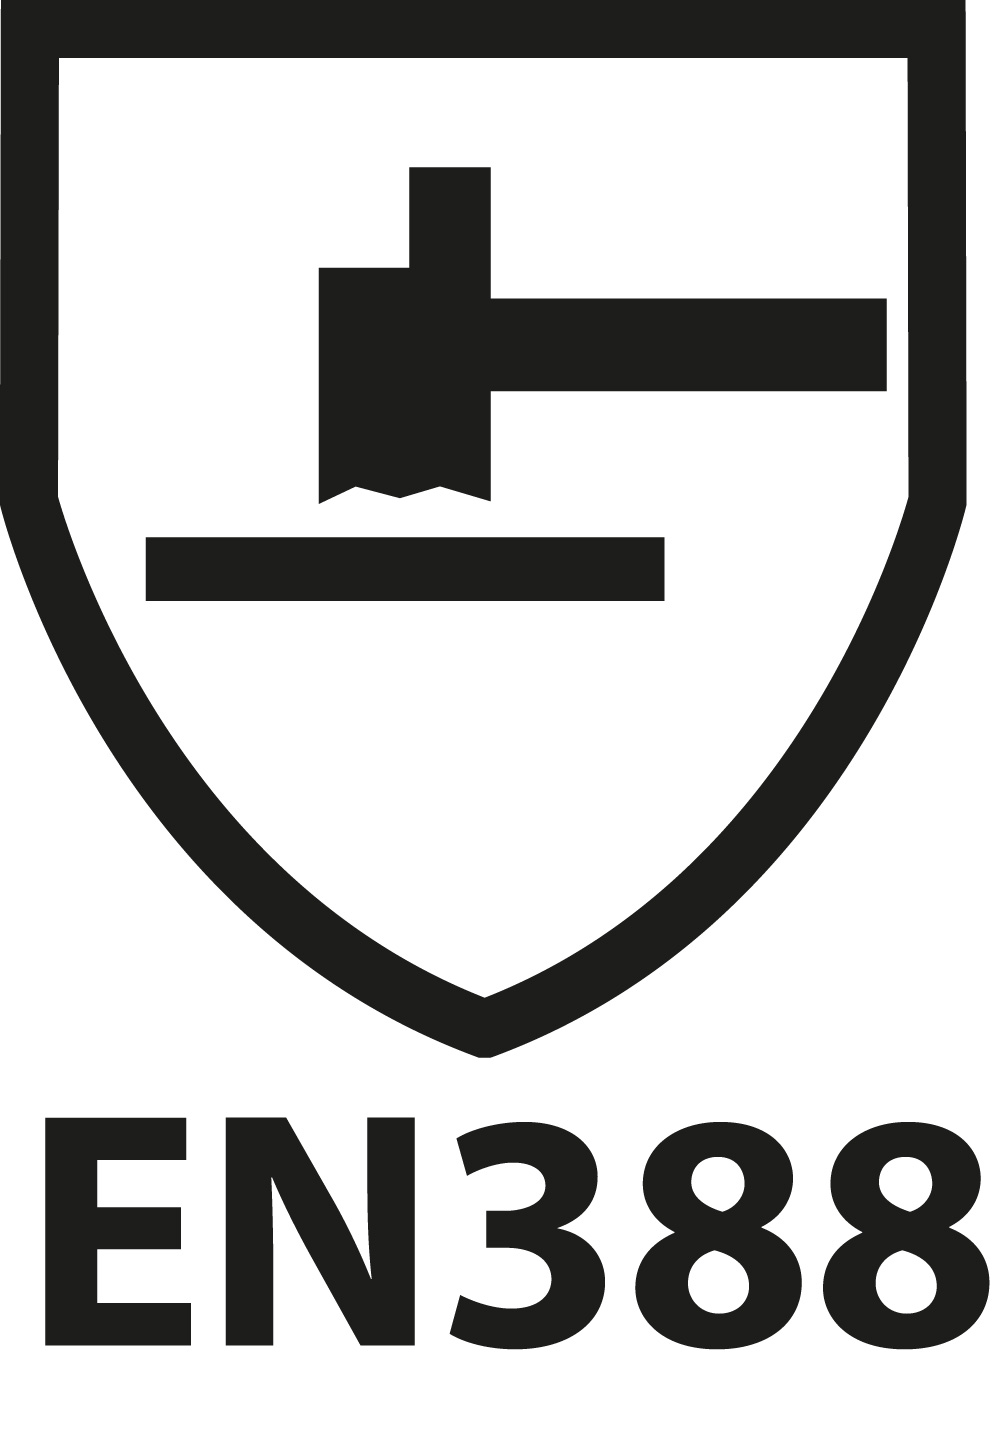 EN388 2003